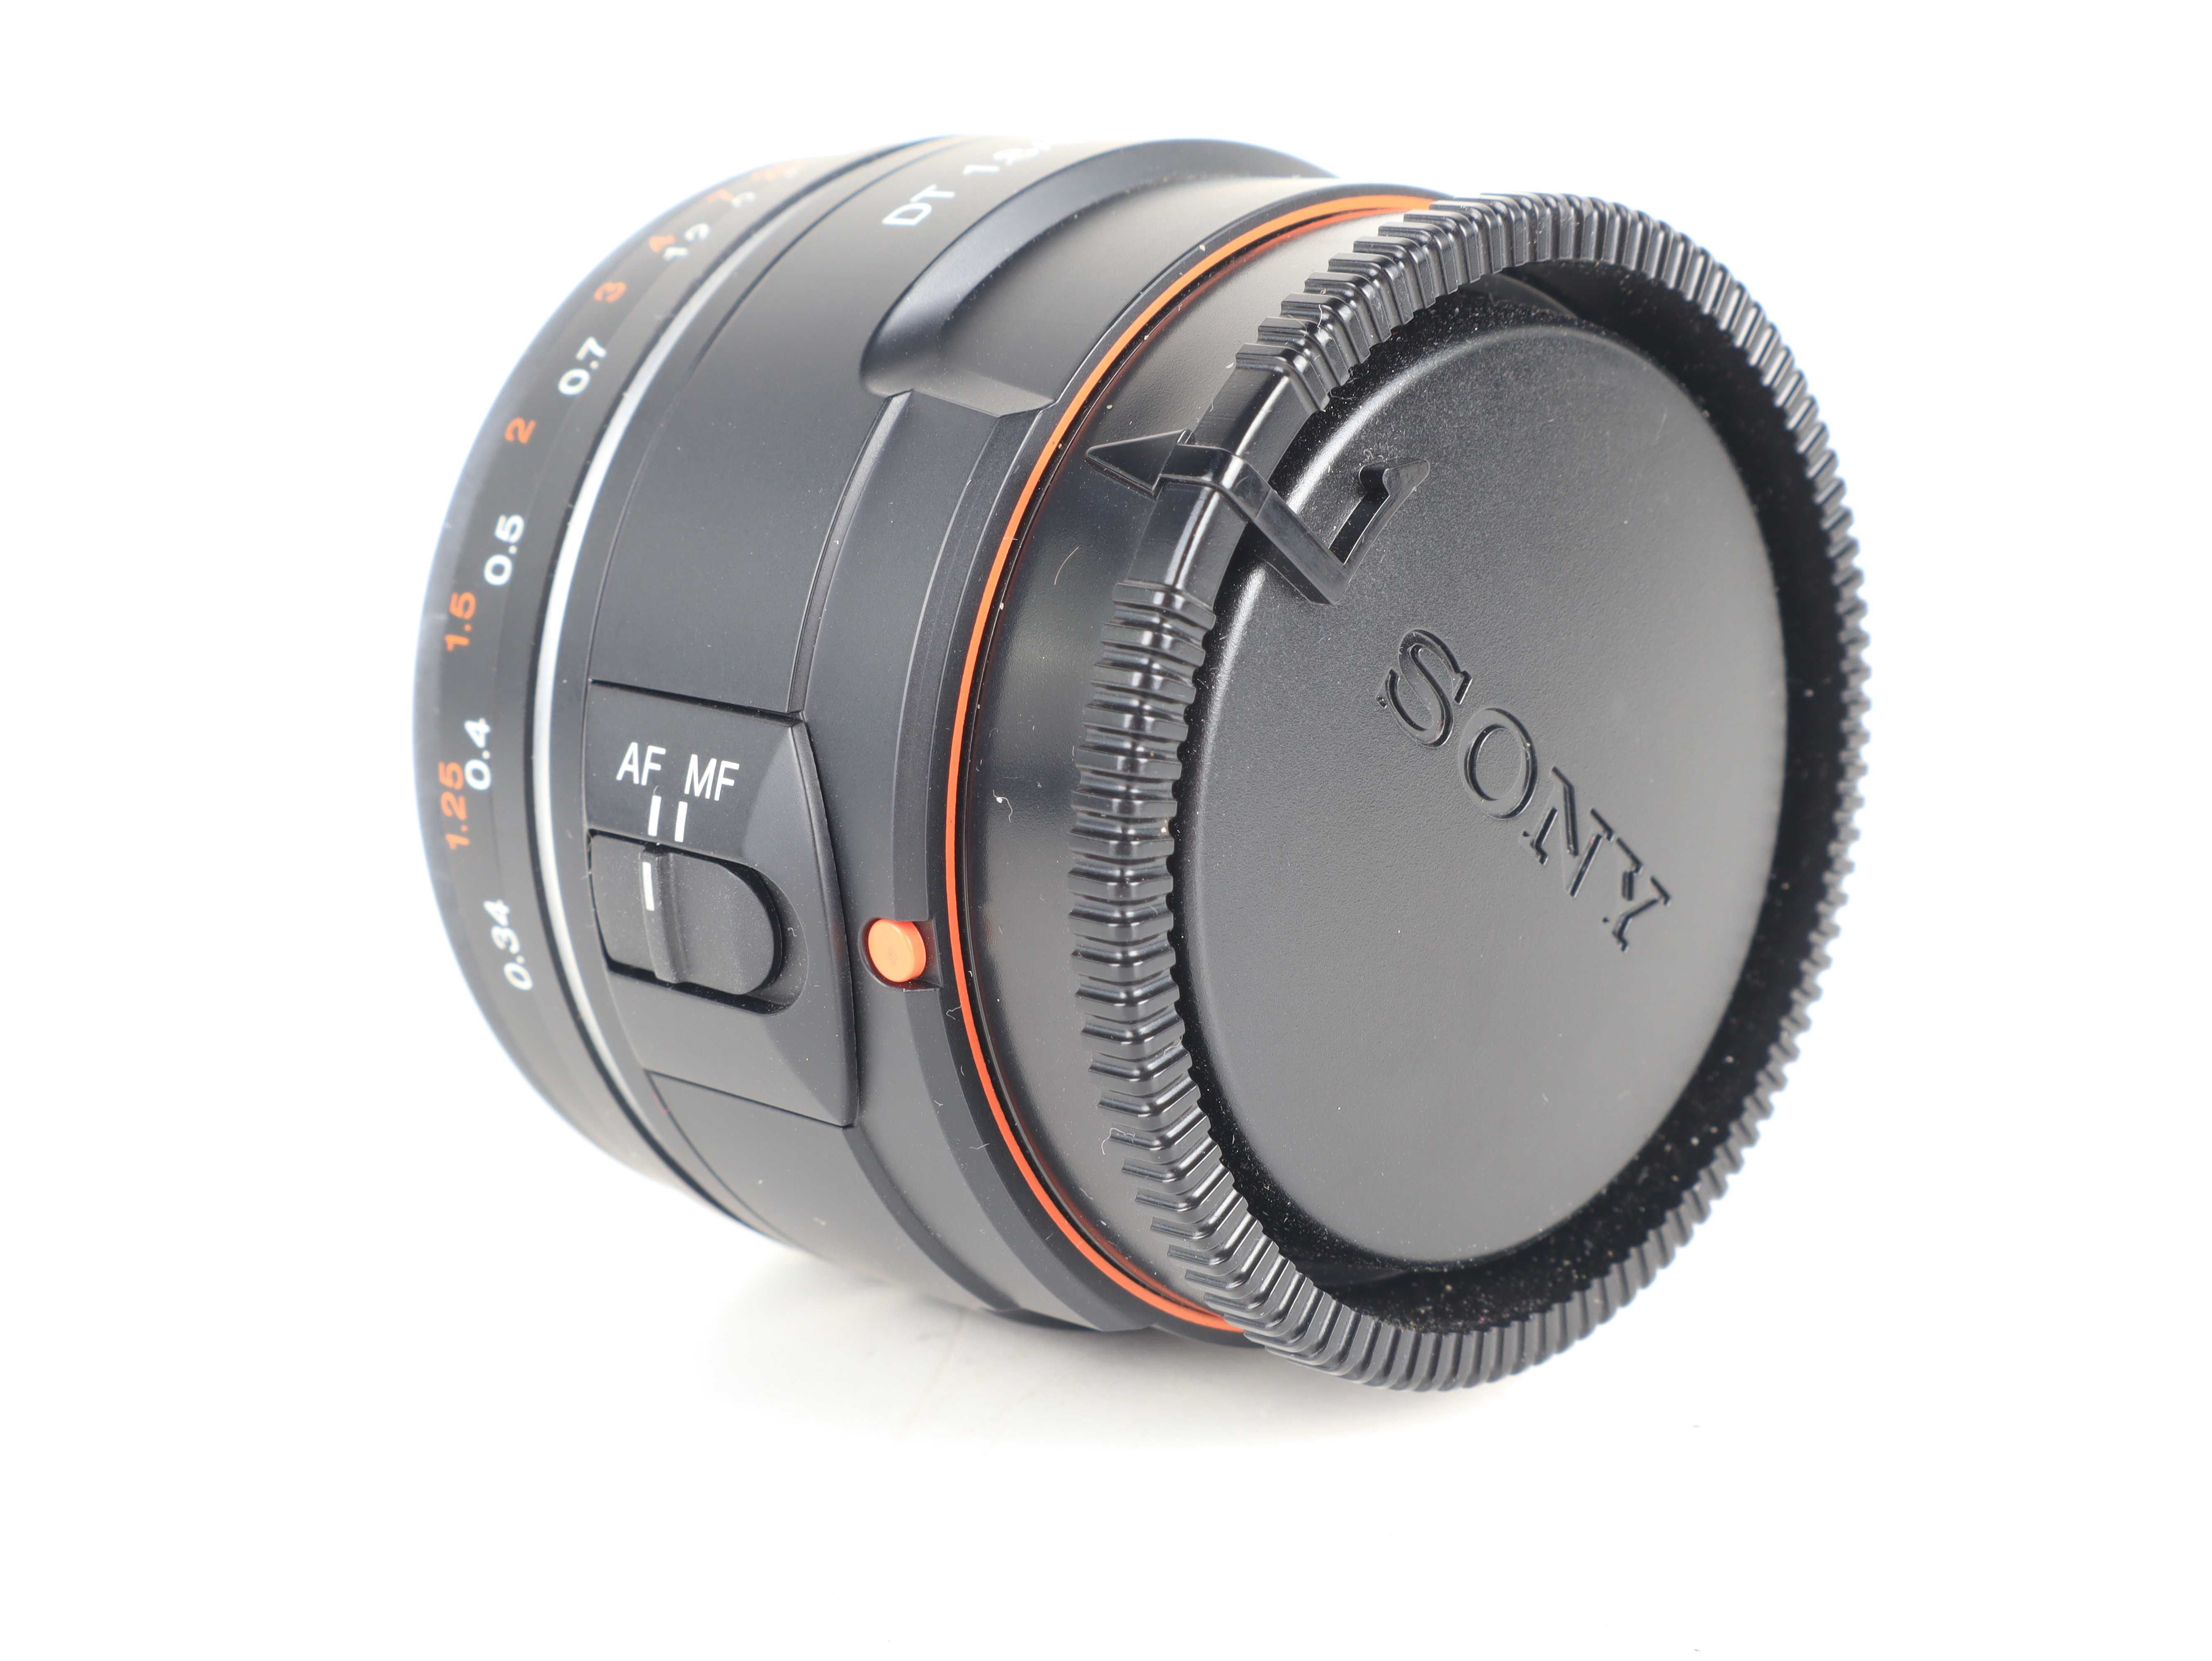 Aparat Sony Alpha ILCA-68 24.3Mpx Obiektywy SAL18552 oraz SAL50F18